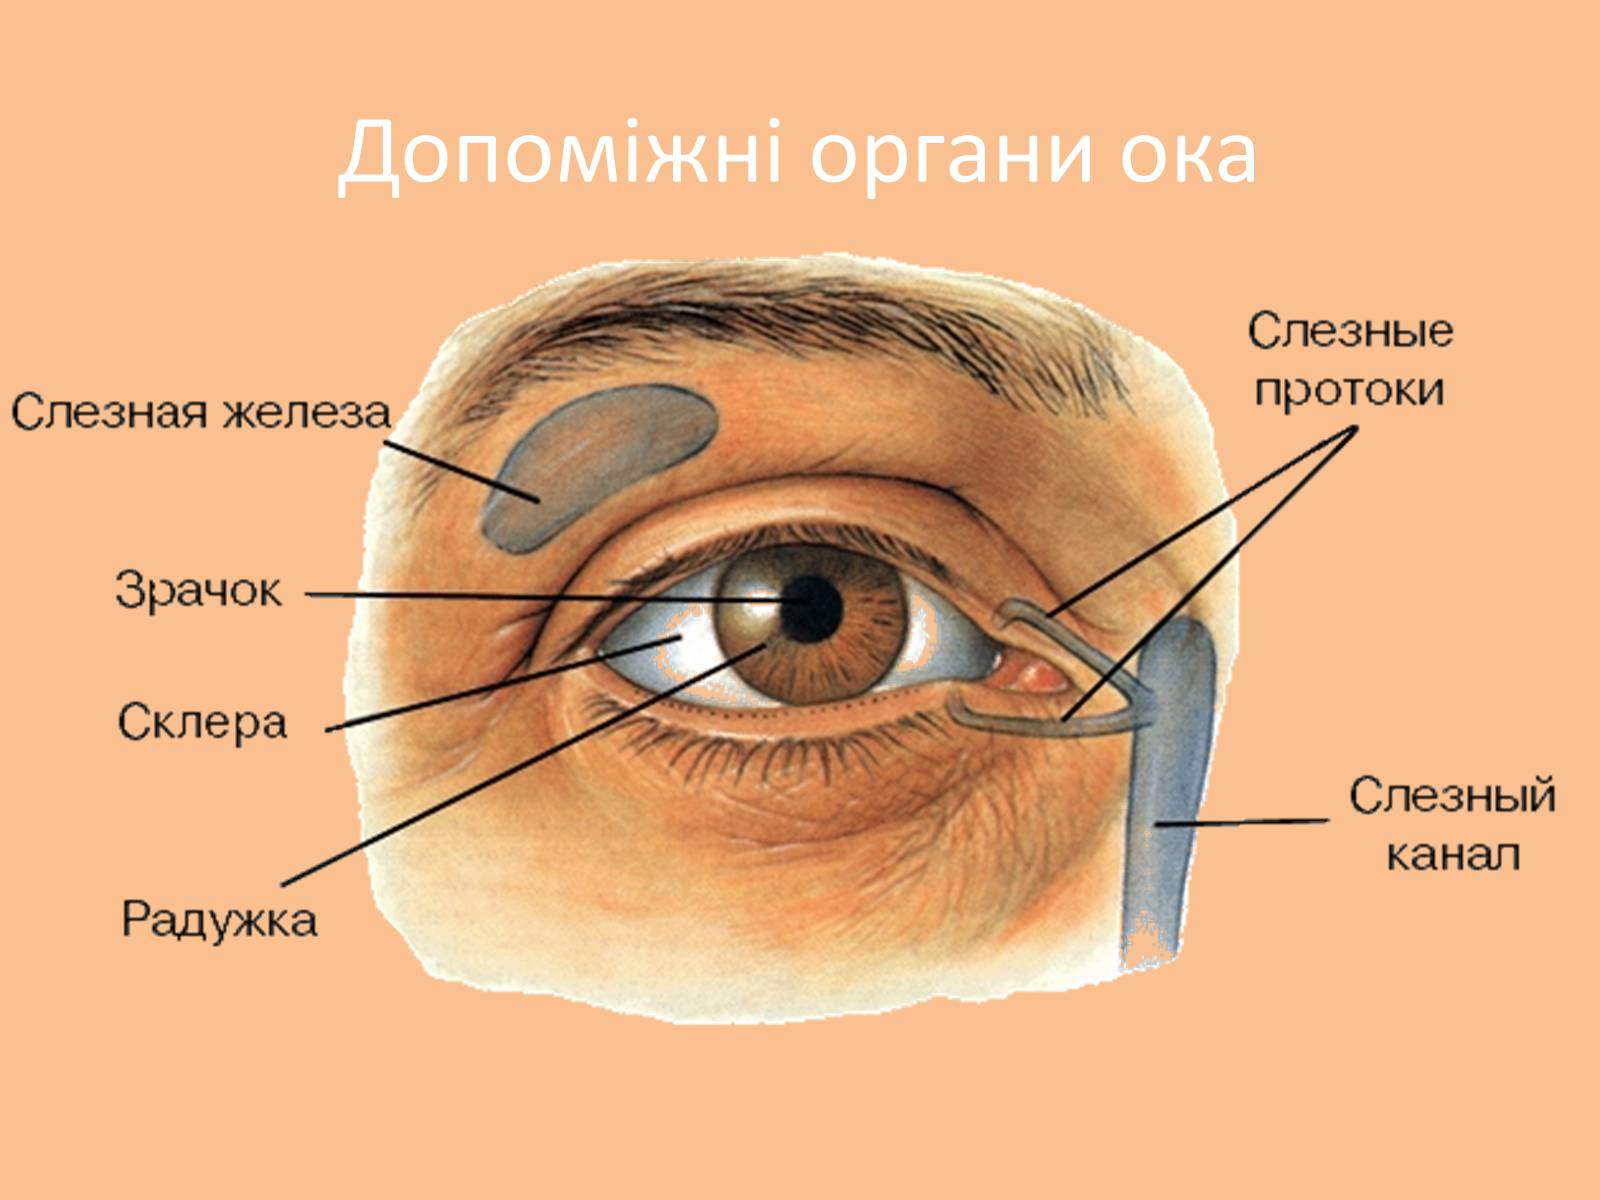 Строение век человека. Дакриоаденит слезной железы. Анатомия глаза слезного канала. Слезная железа и слезный канал функции. Защитно вспомогательный аппарат глаза.